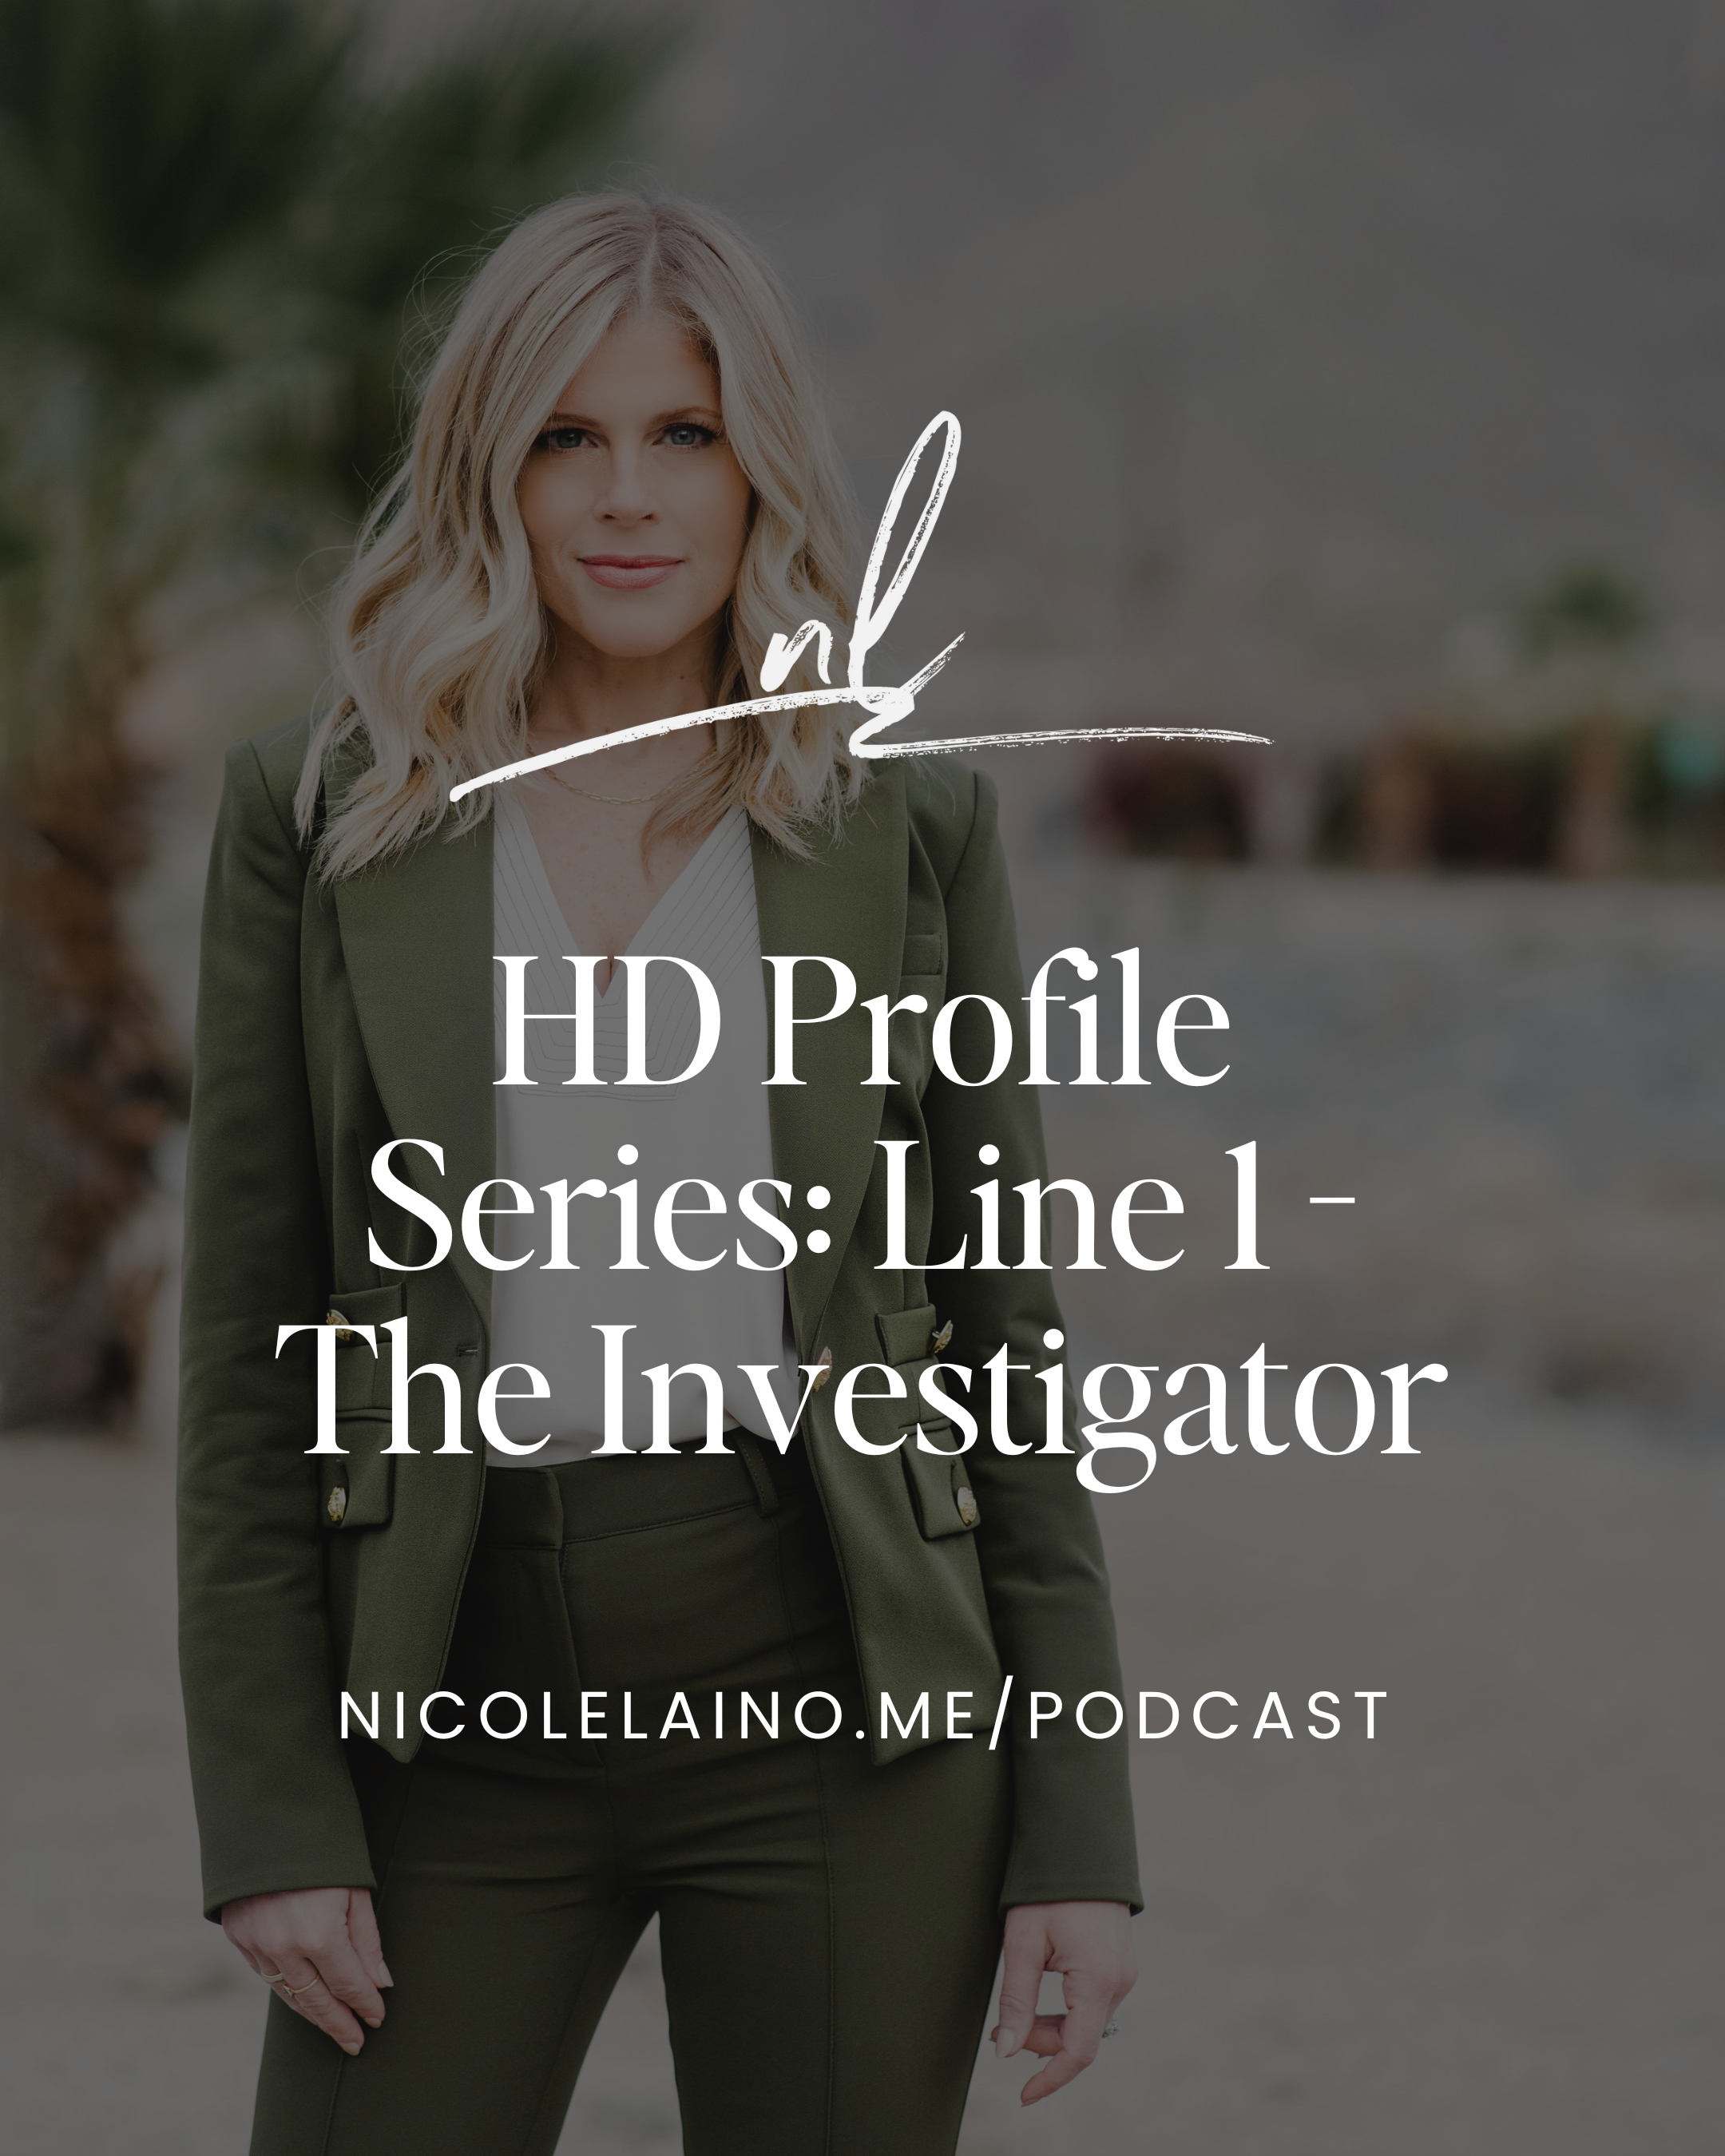 HD Profile Series: Line 1 - The Investigator